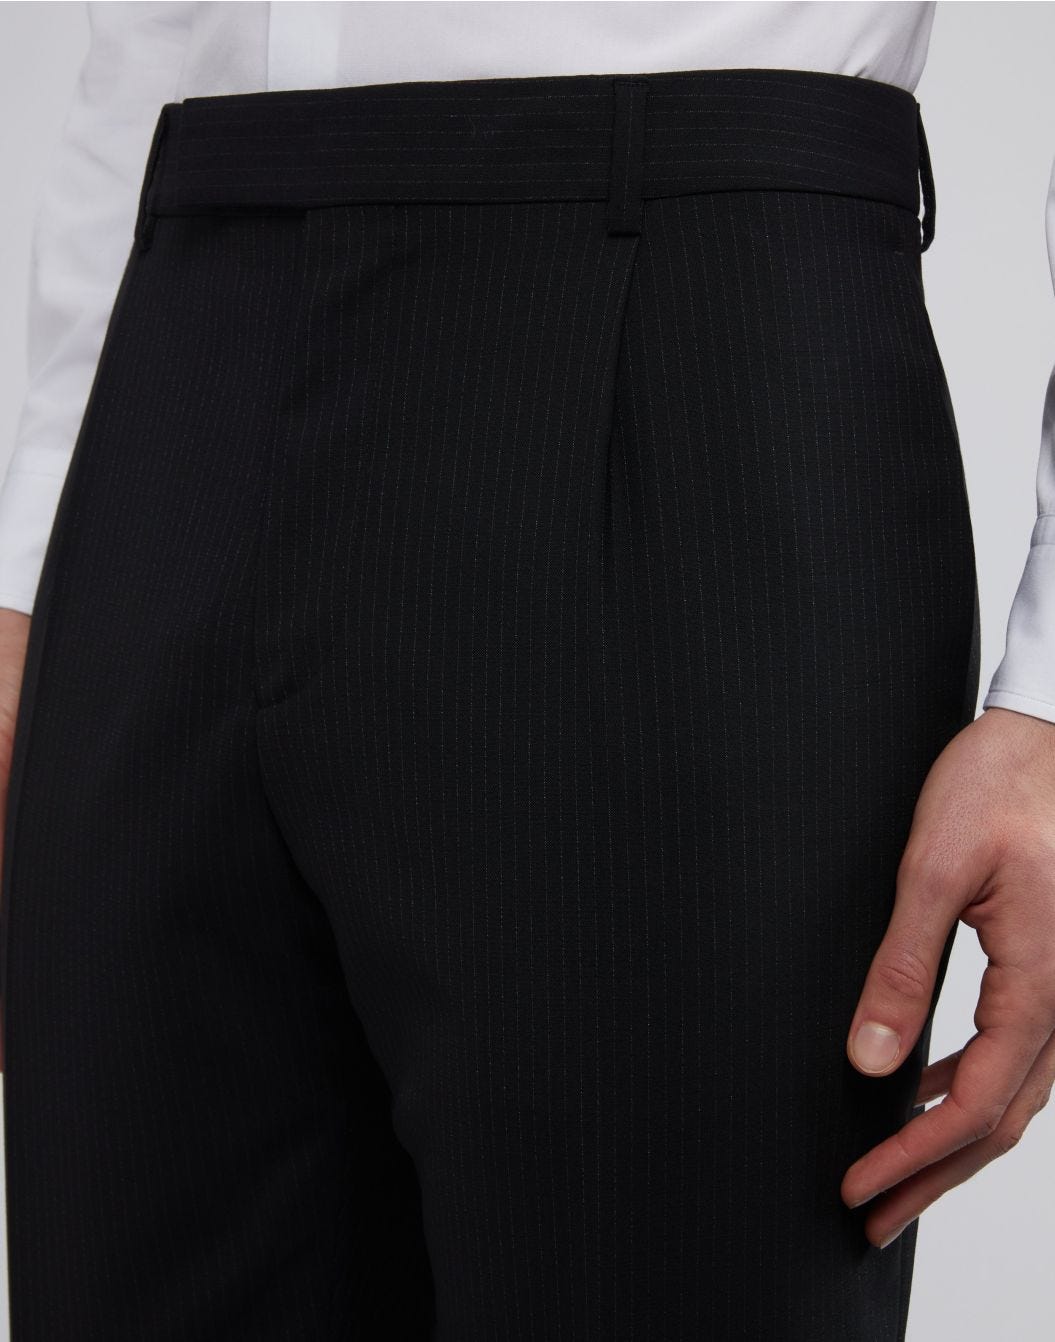 Pantalone nero con gessatura a contrasto